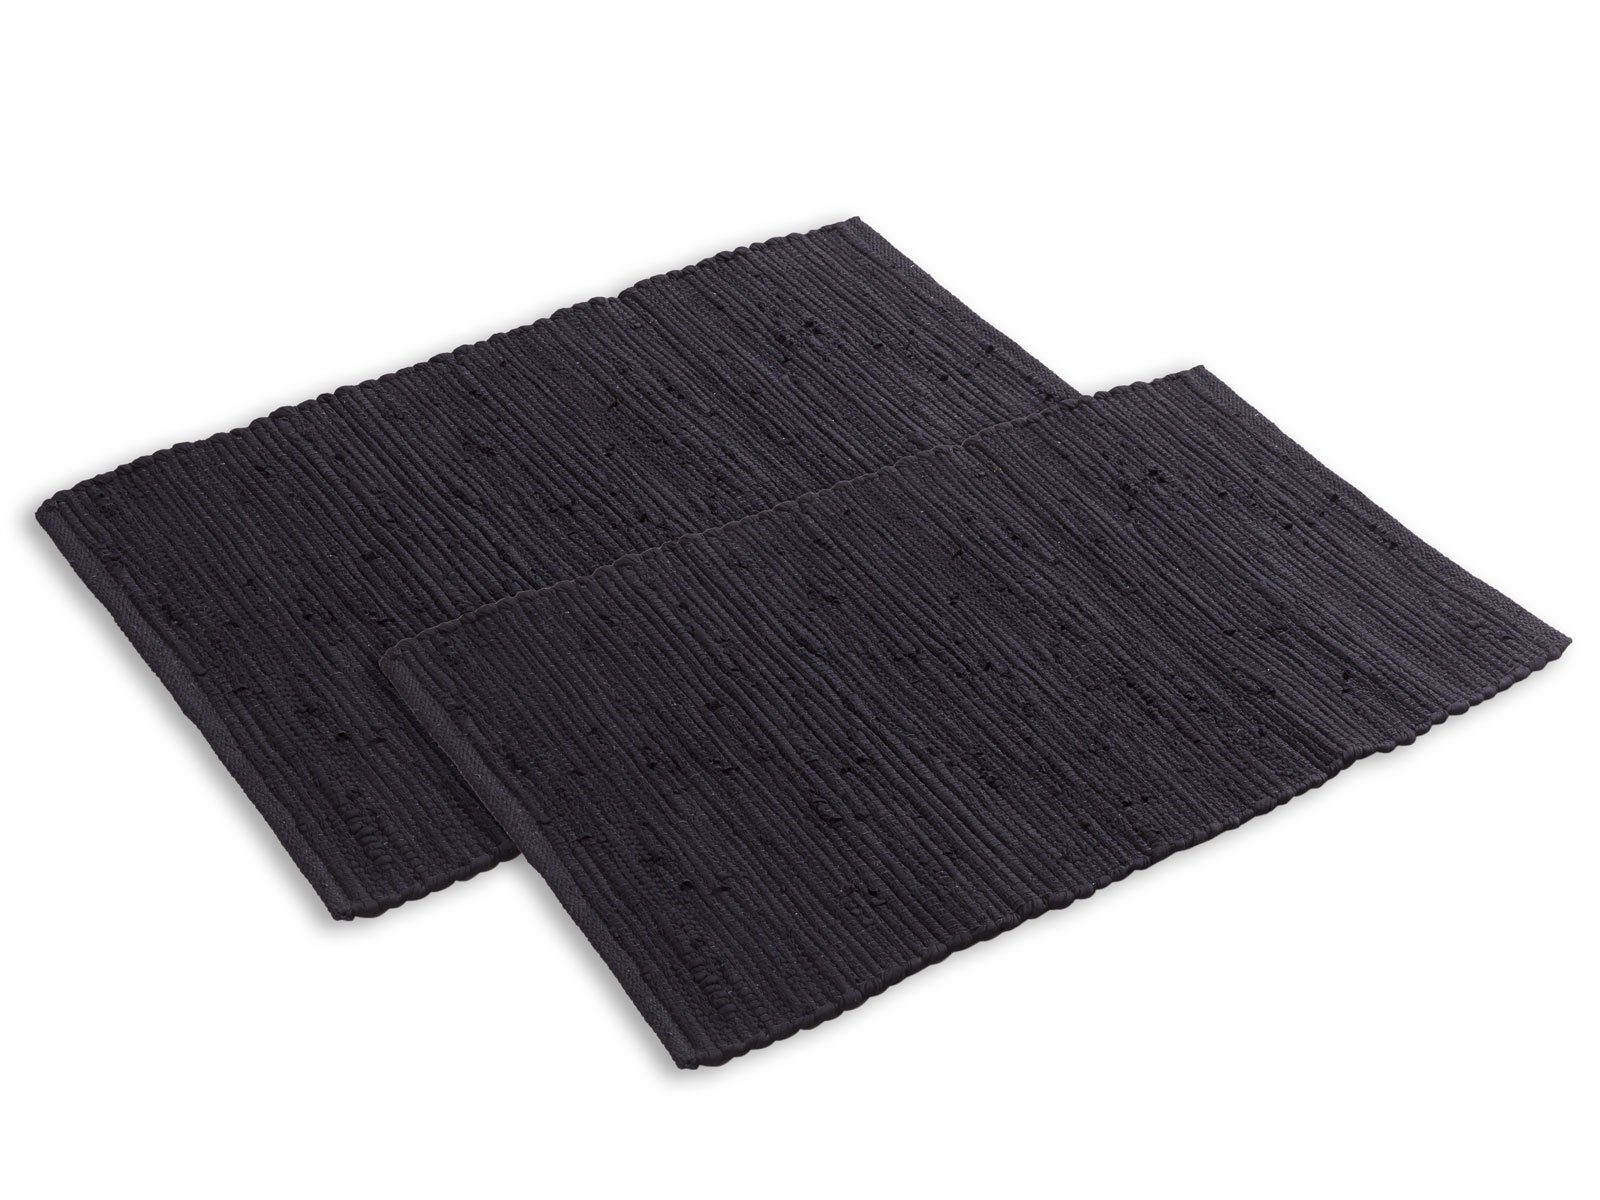 Baumwolle 80x50 Badematte cm groß vers. Teppich 100% Badteppich Set schwarz Minara Farben, 2er